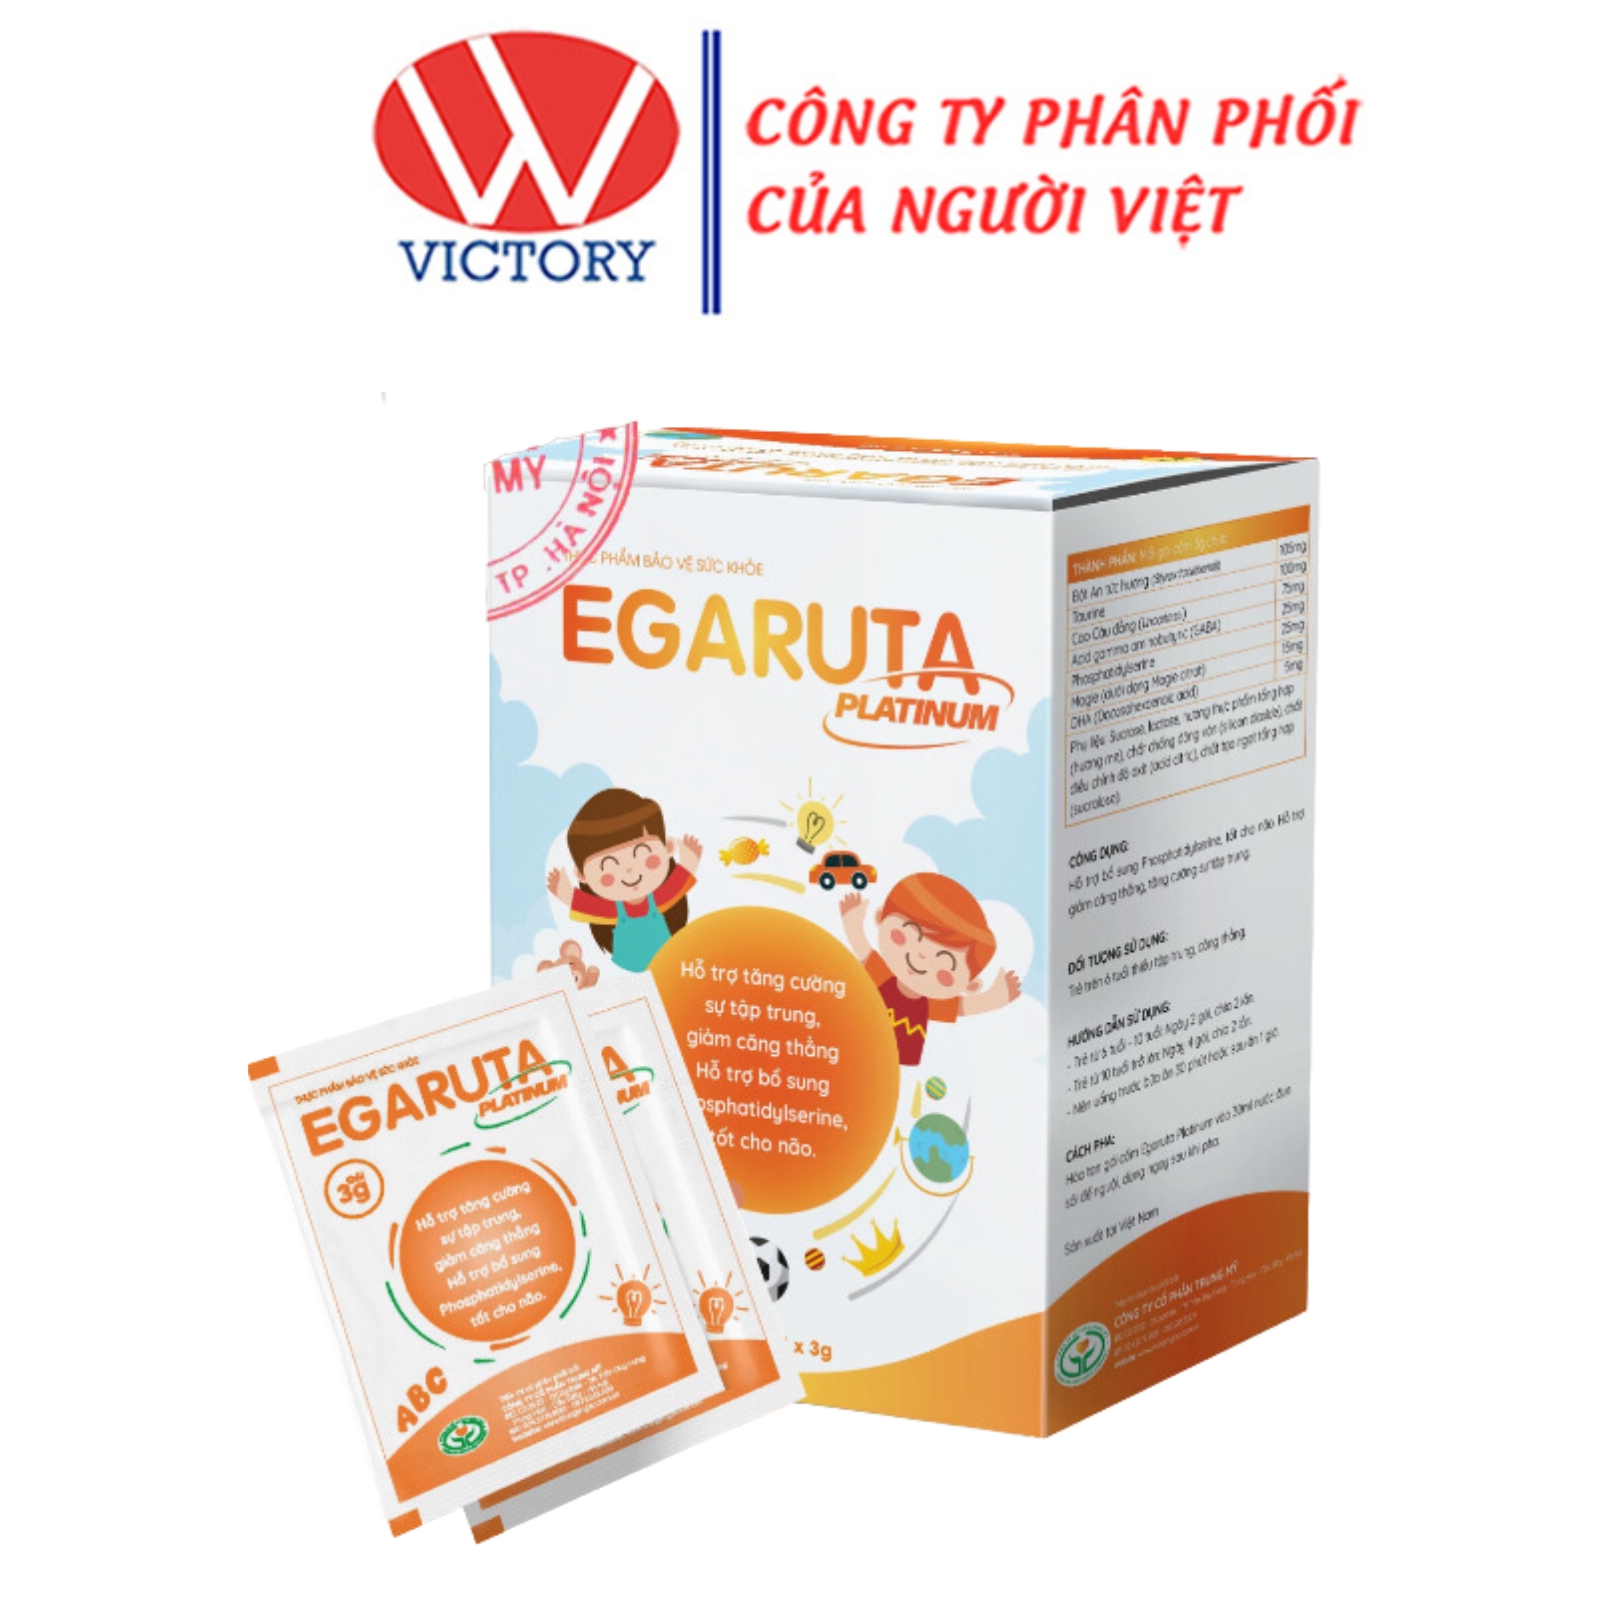 Egaruta Platinum - Giúp bé tăng cường sự tập trung , giảm căng thẳng